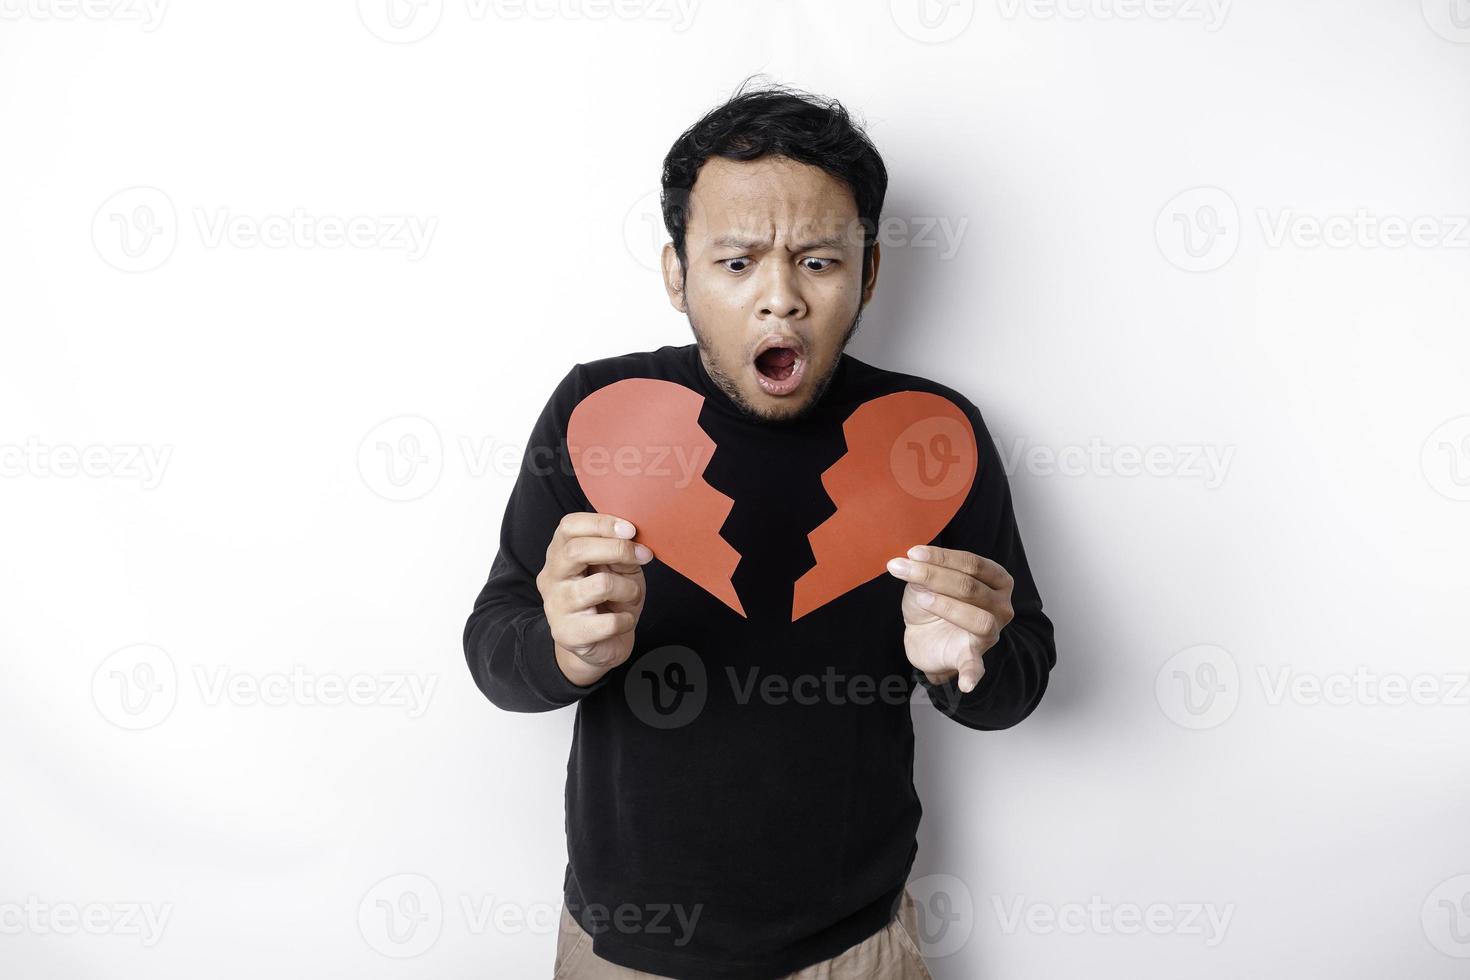 schön jung asiatisch Mann ausgedrückt seine Traurigkeit während halten gebrochen Herz isoliert auf Weiß Hintergrund foto